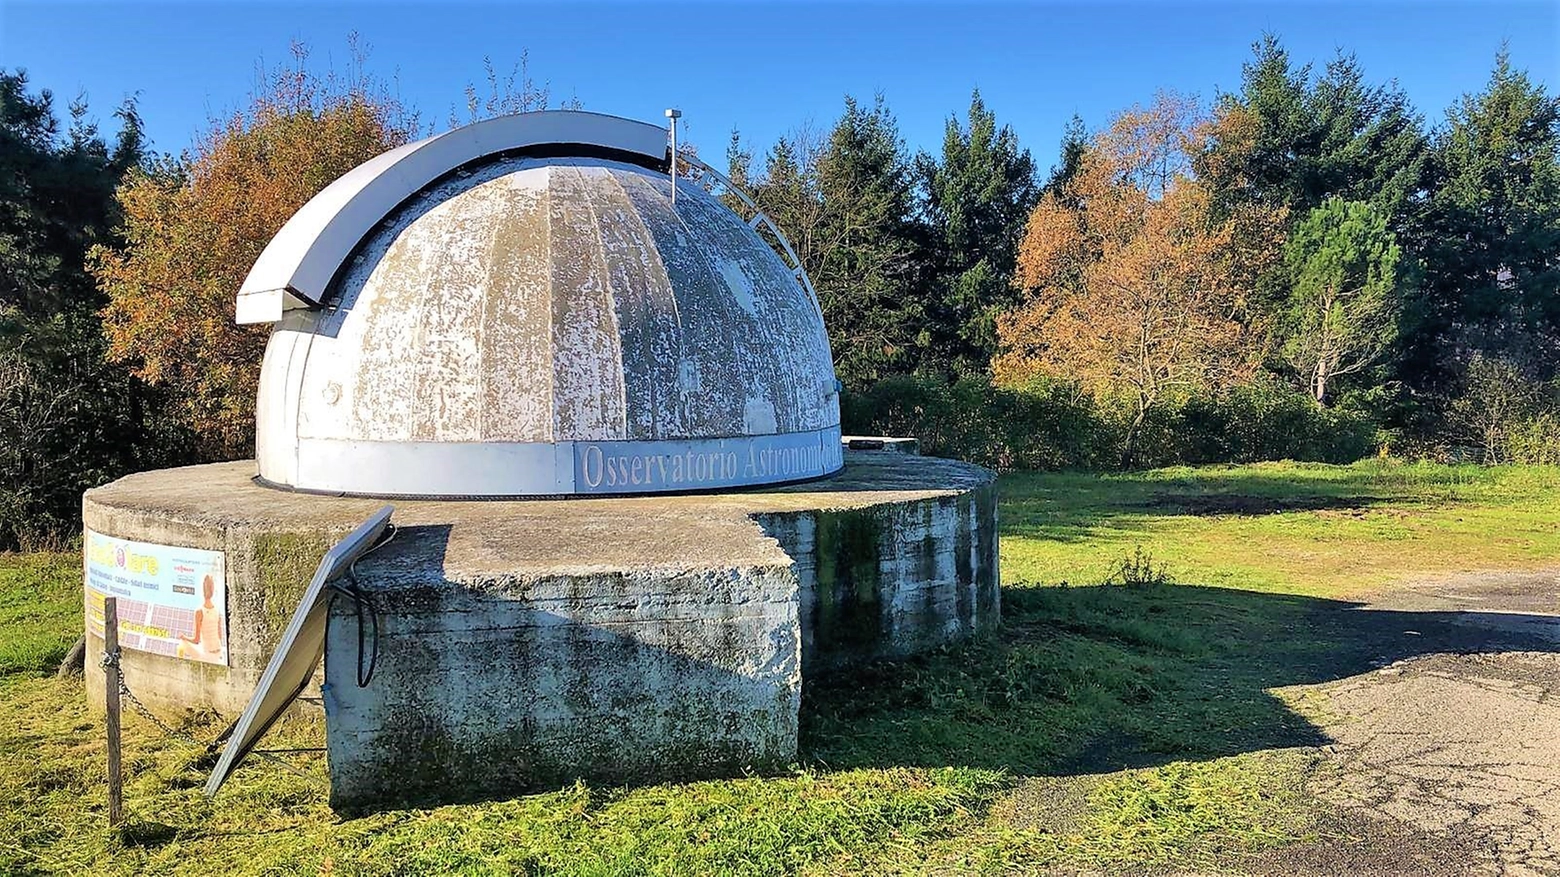 L'osservatorio astronomico spezzino di Viseggi